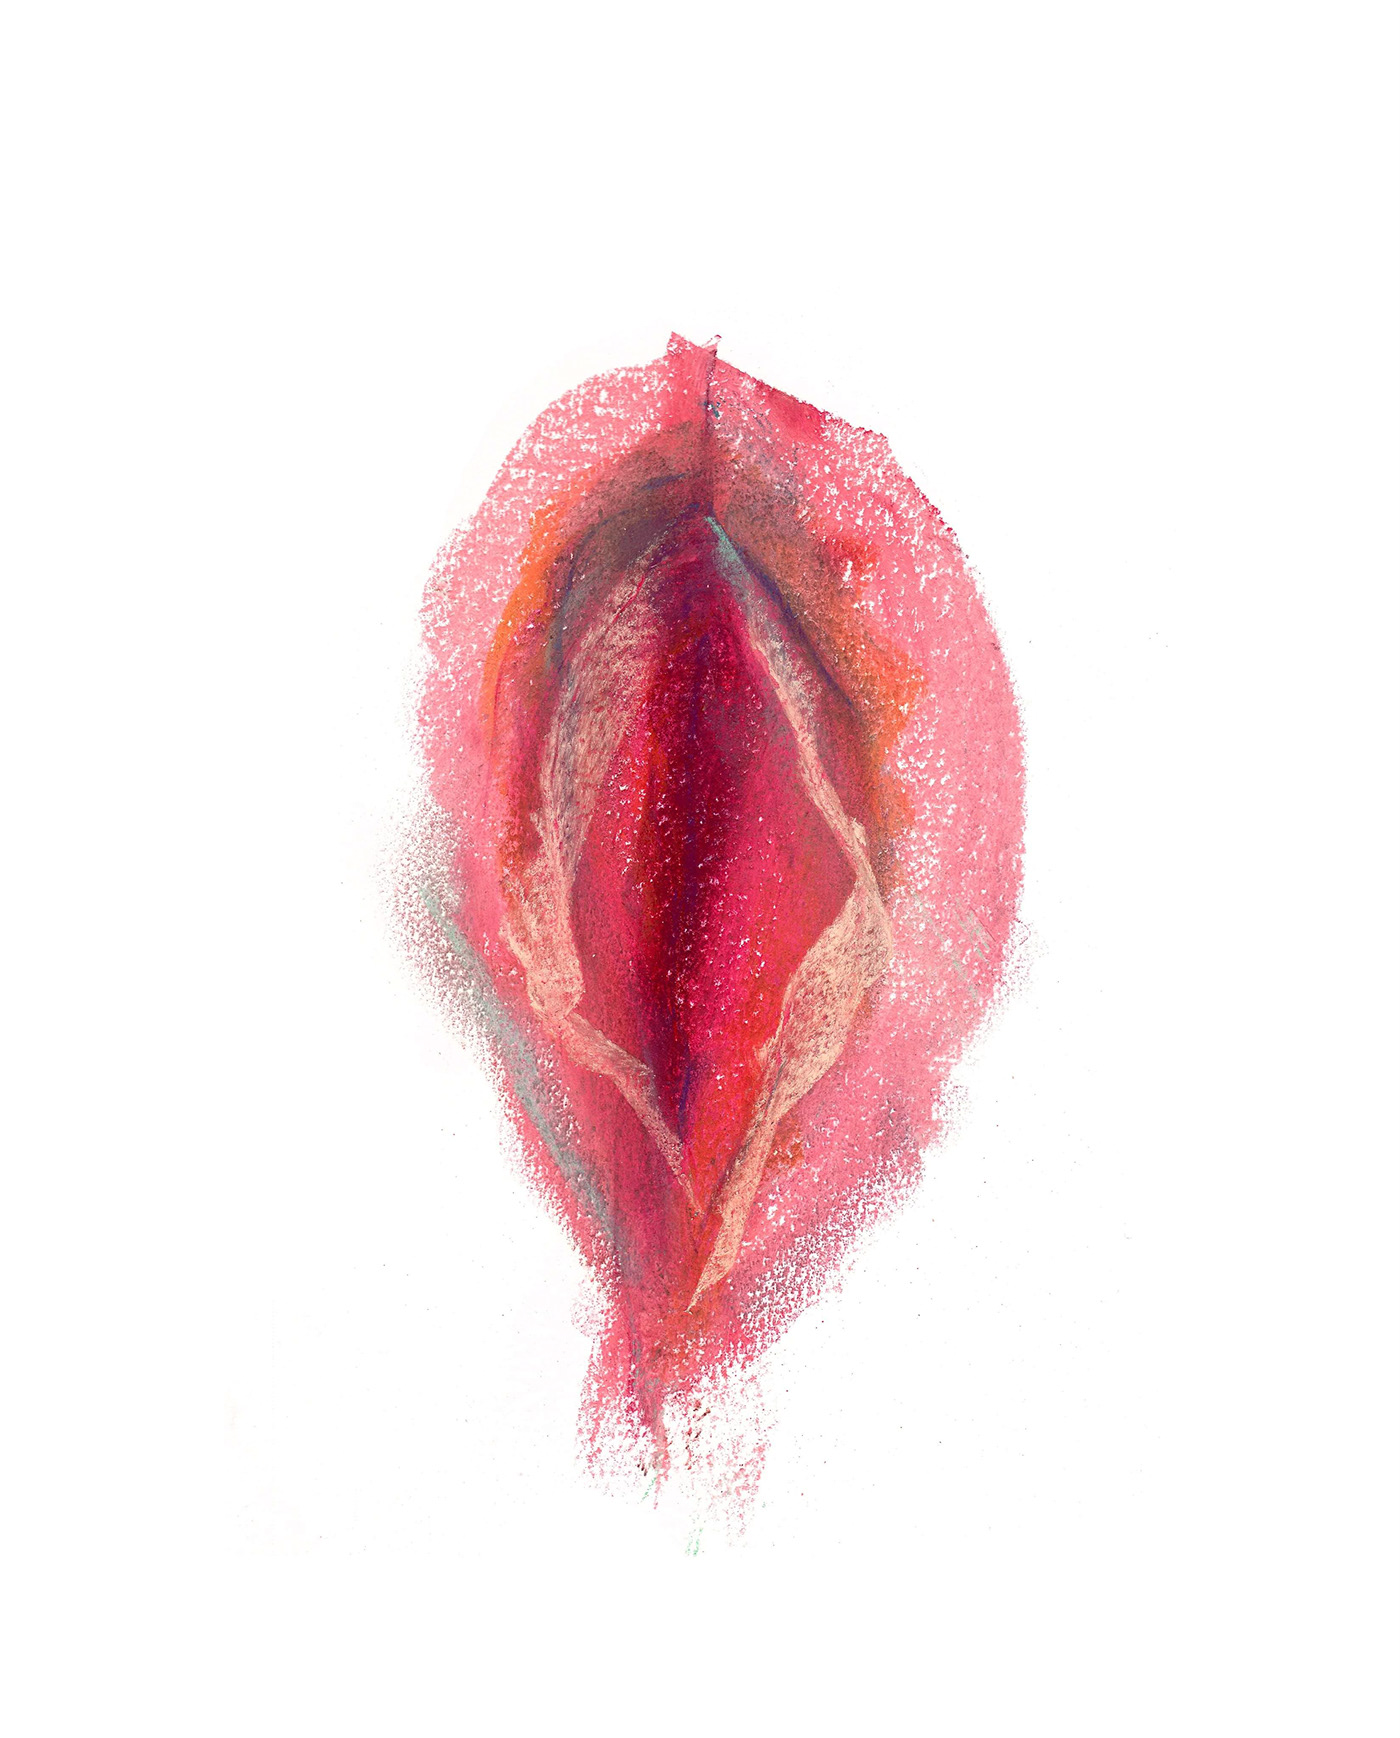 vulva feministe abstract body positive women colors feminism Diversity